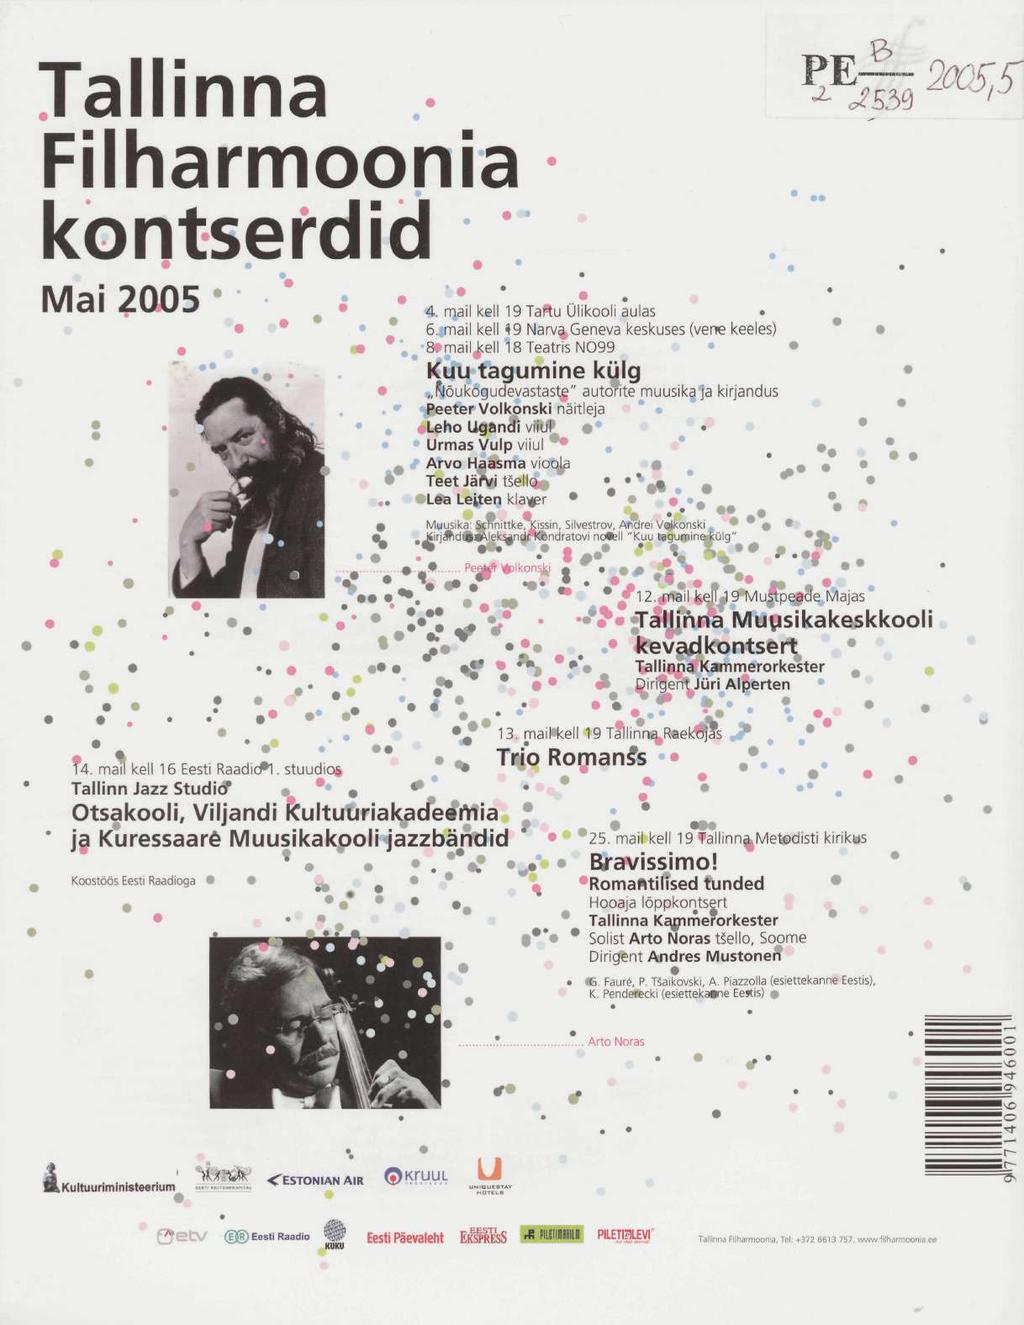 Tallinna Filharmoonia В ^ JS5 > Щ5\ kontserdid / Mai 2005 ' '* s 4. mail kell 19 Tartu Ülikooli aulas 6. mail kell 49 Narva Geneva keskuses (vene keeles) 8.